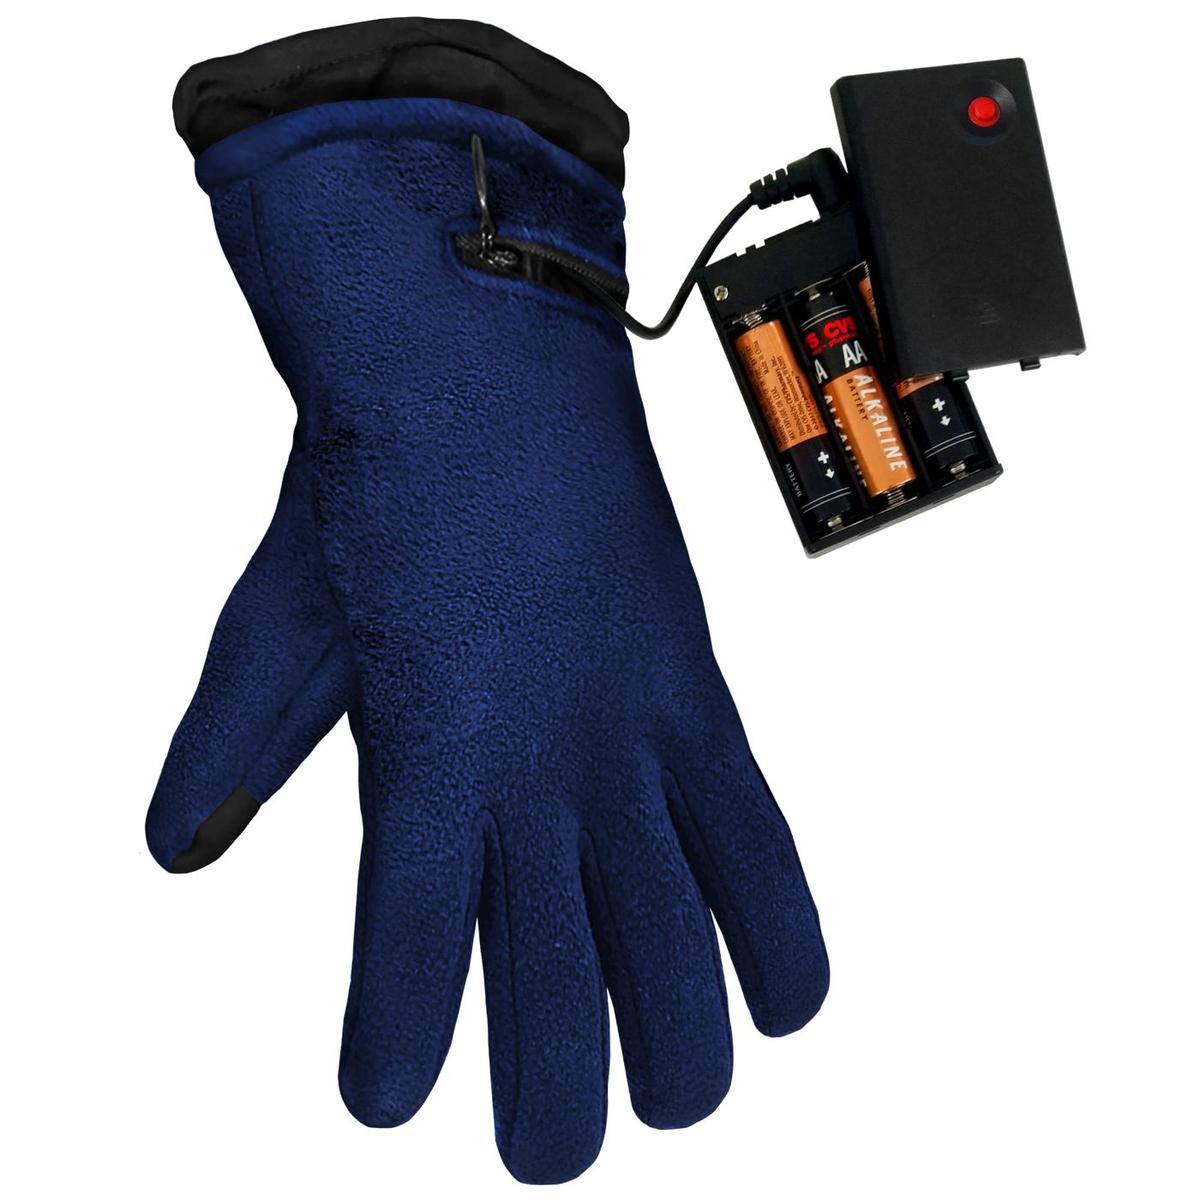 ActionHeat AA Battery Heated Fleece Gloves - Full Set